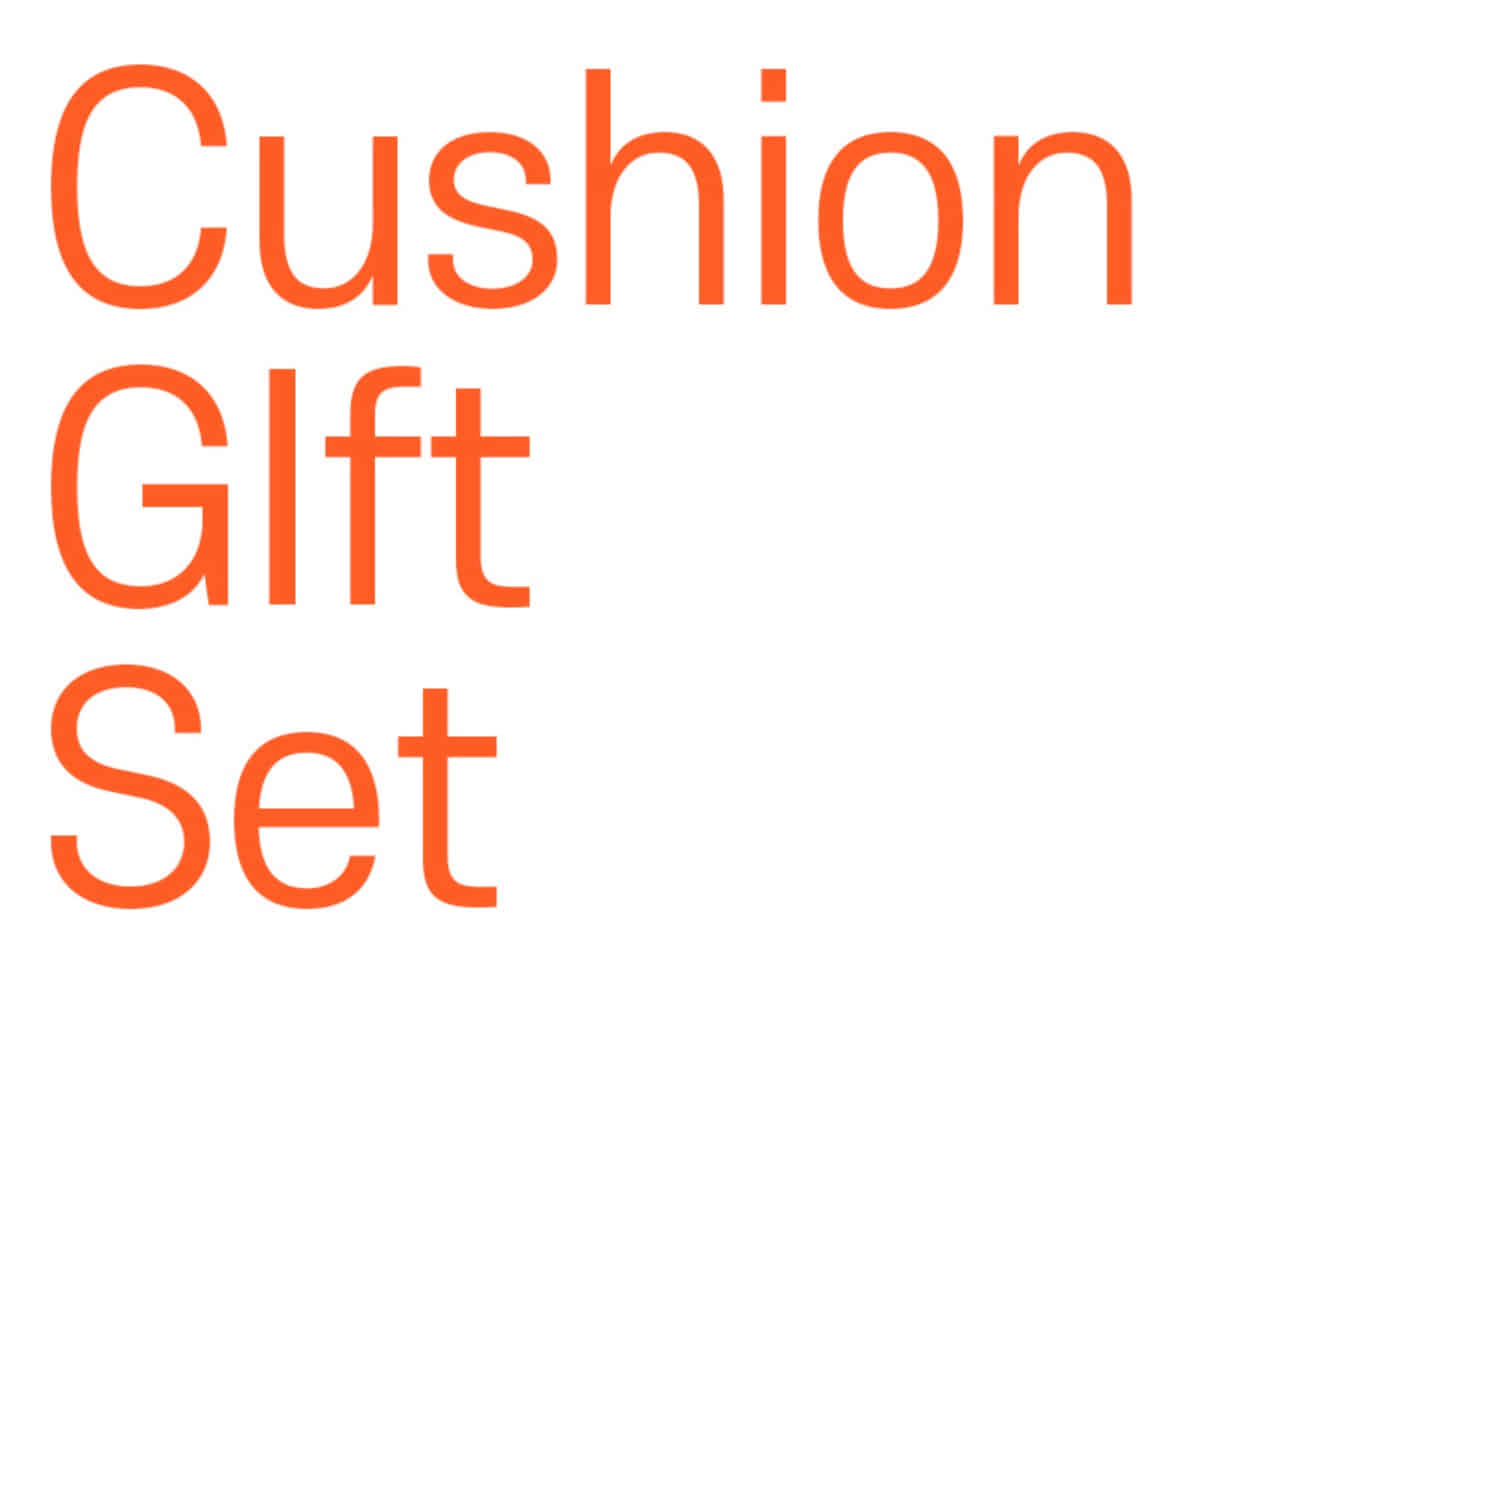 Cushion GIft Set Promotion